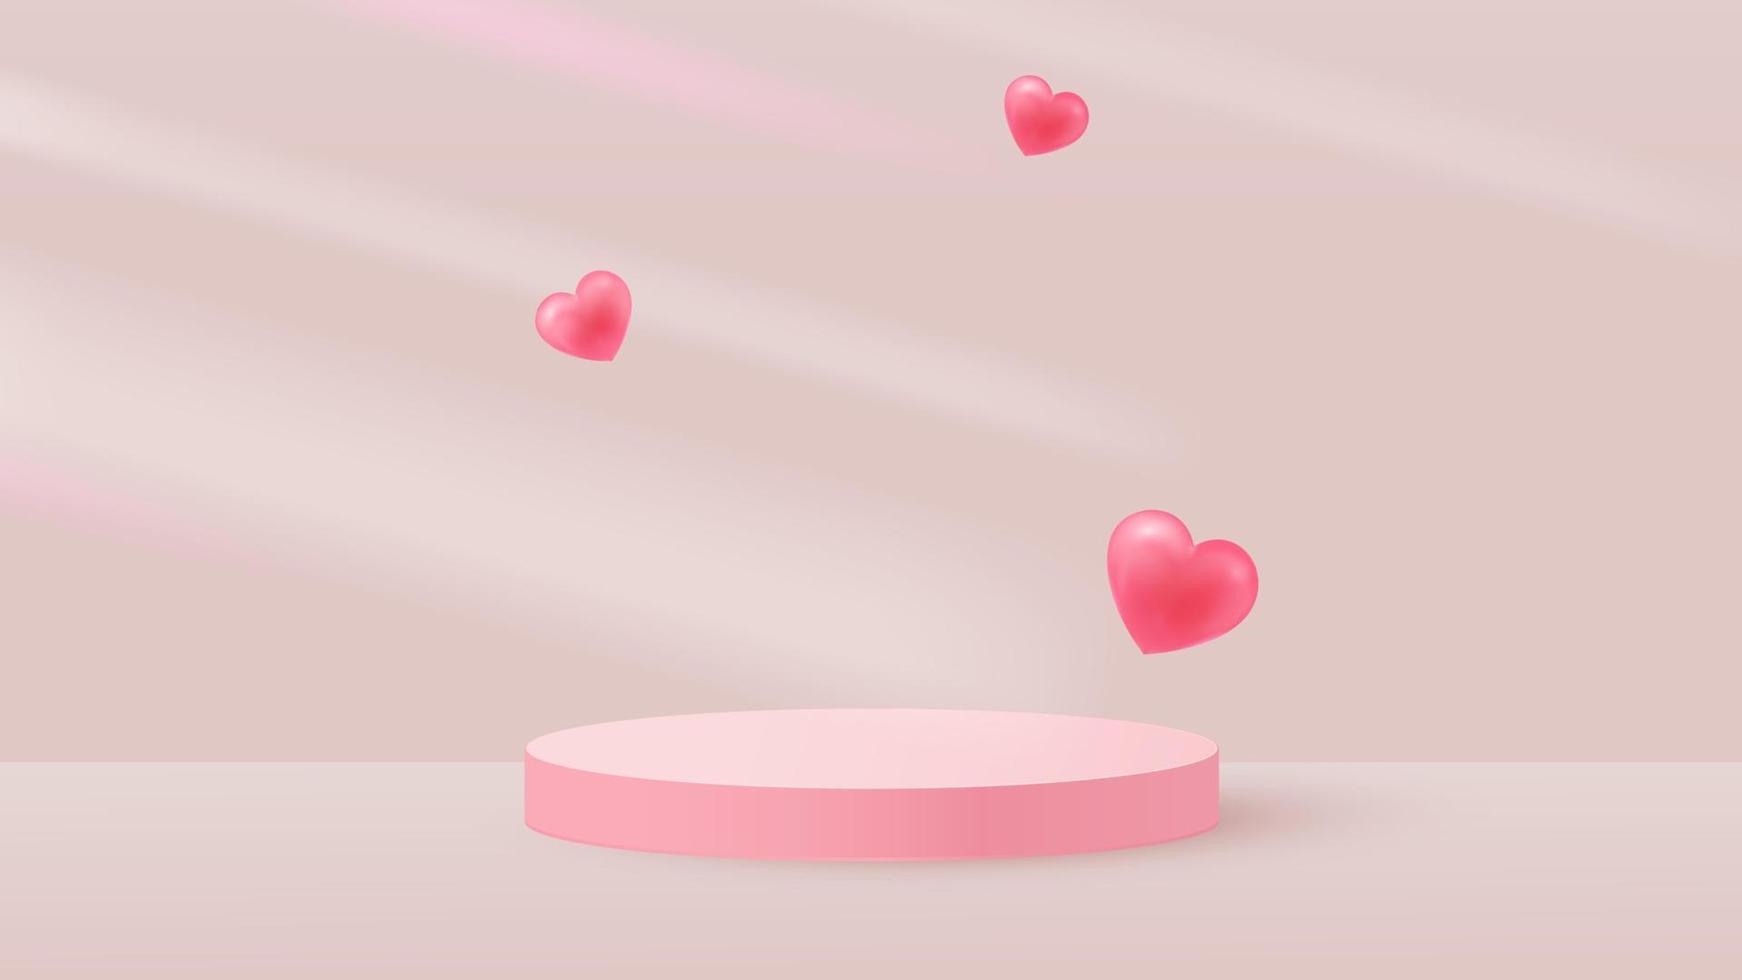 cena minimalista com pódio cilíndrico rosa e corações voadores. sombras caindo. cenário para a demonstração de um produto cosmético, vitrine. ilustração vetorial vetor